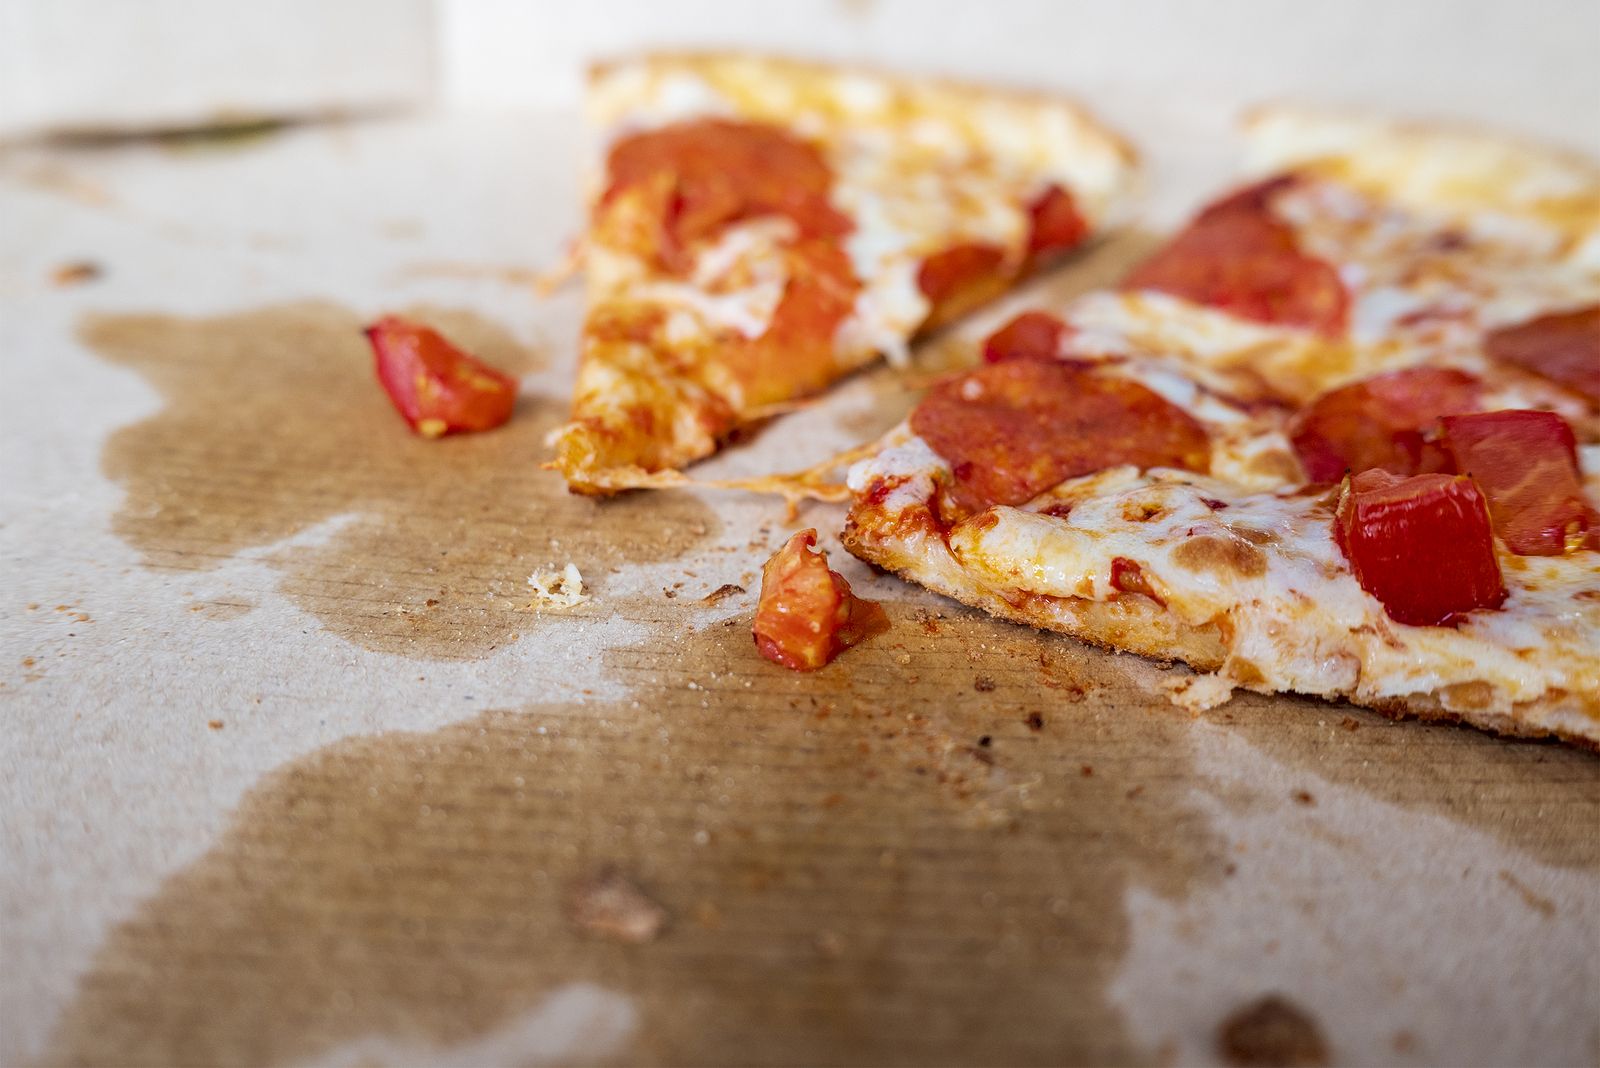 Los peligros de dejar la pizza fuera de la nevera toda la noche